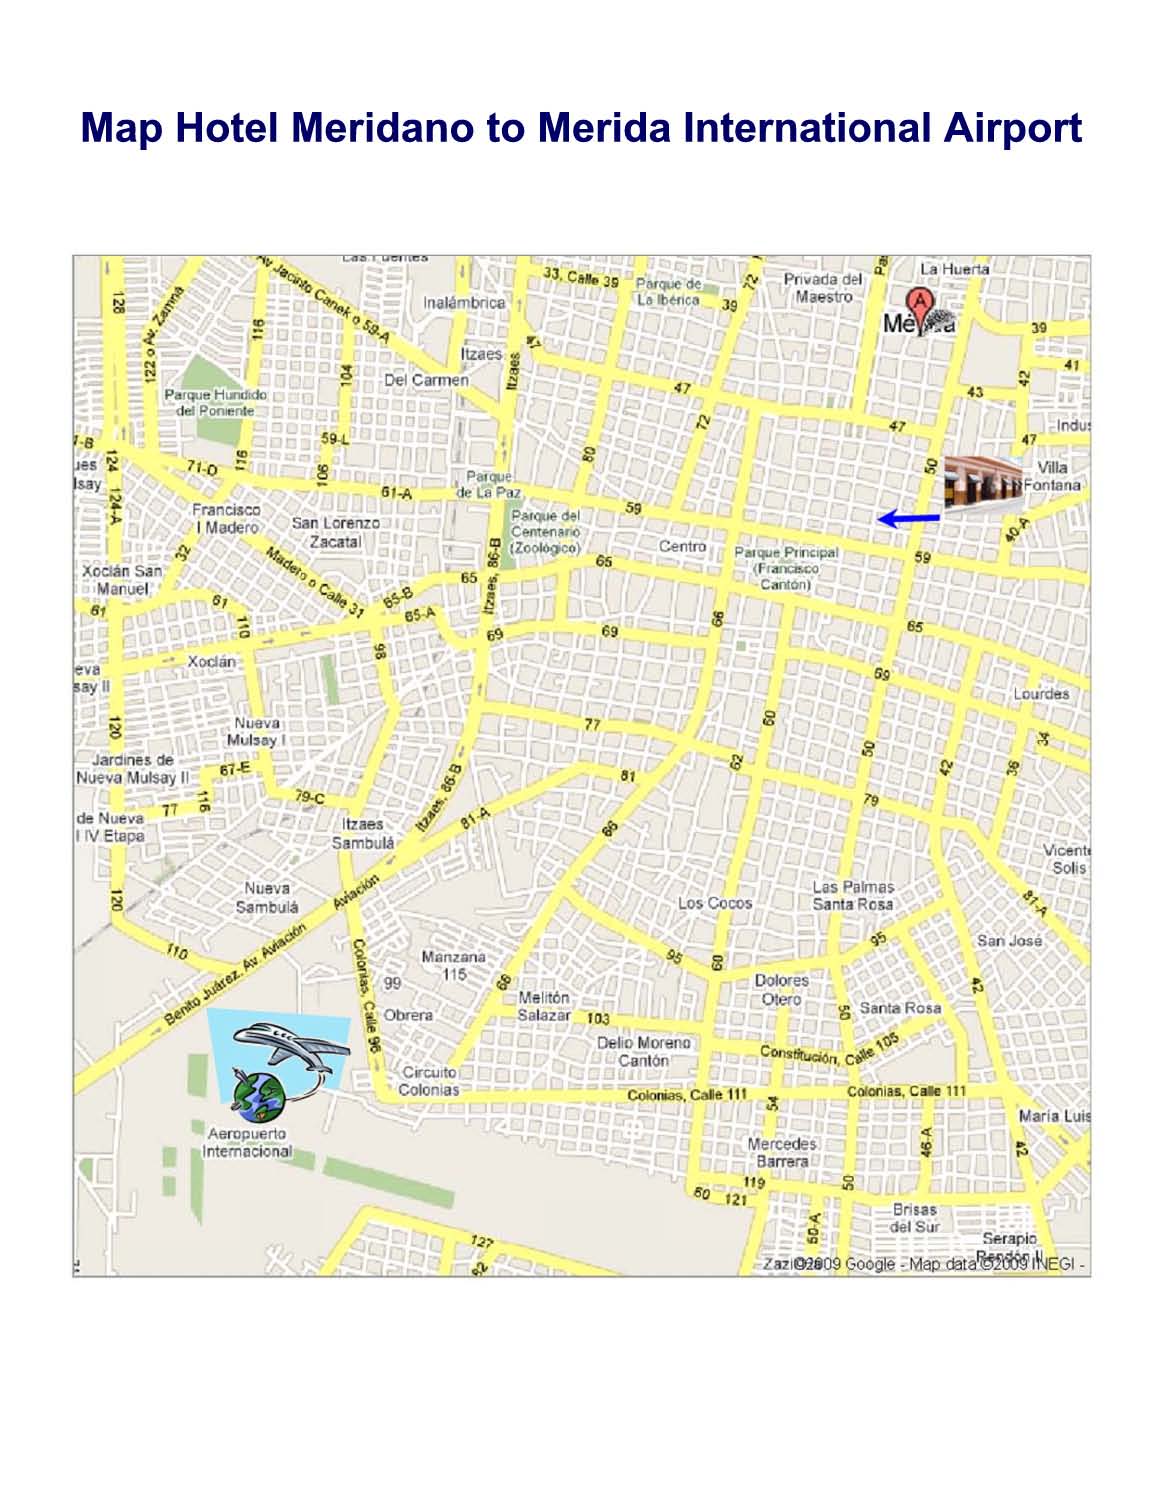 Merida hotel meridano map directions to airport